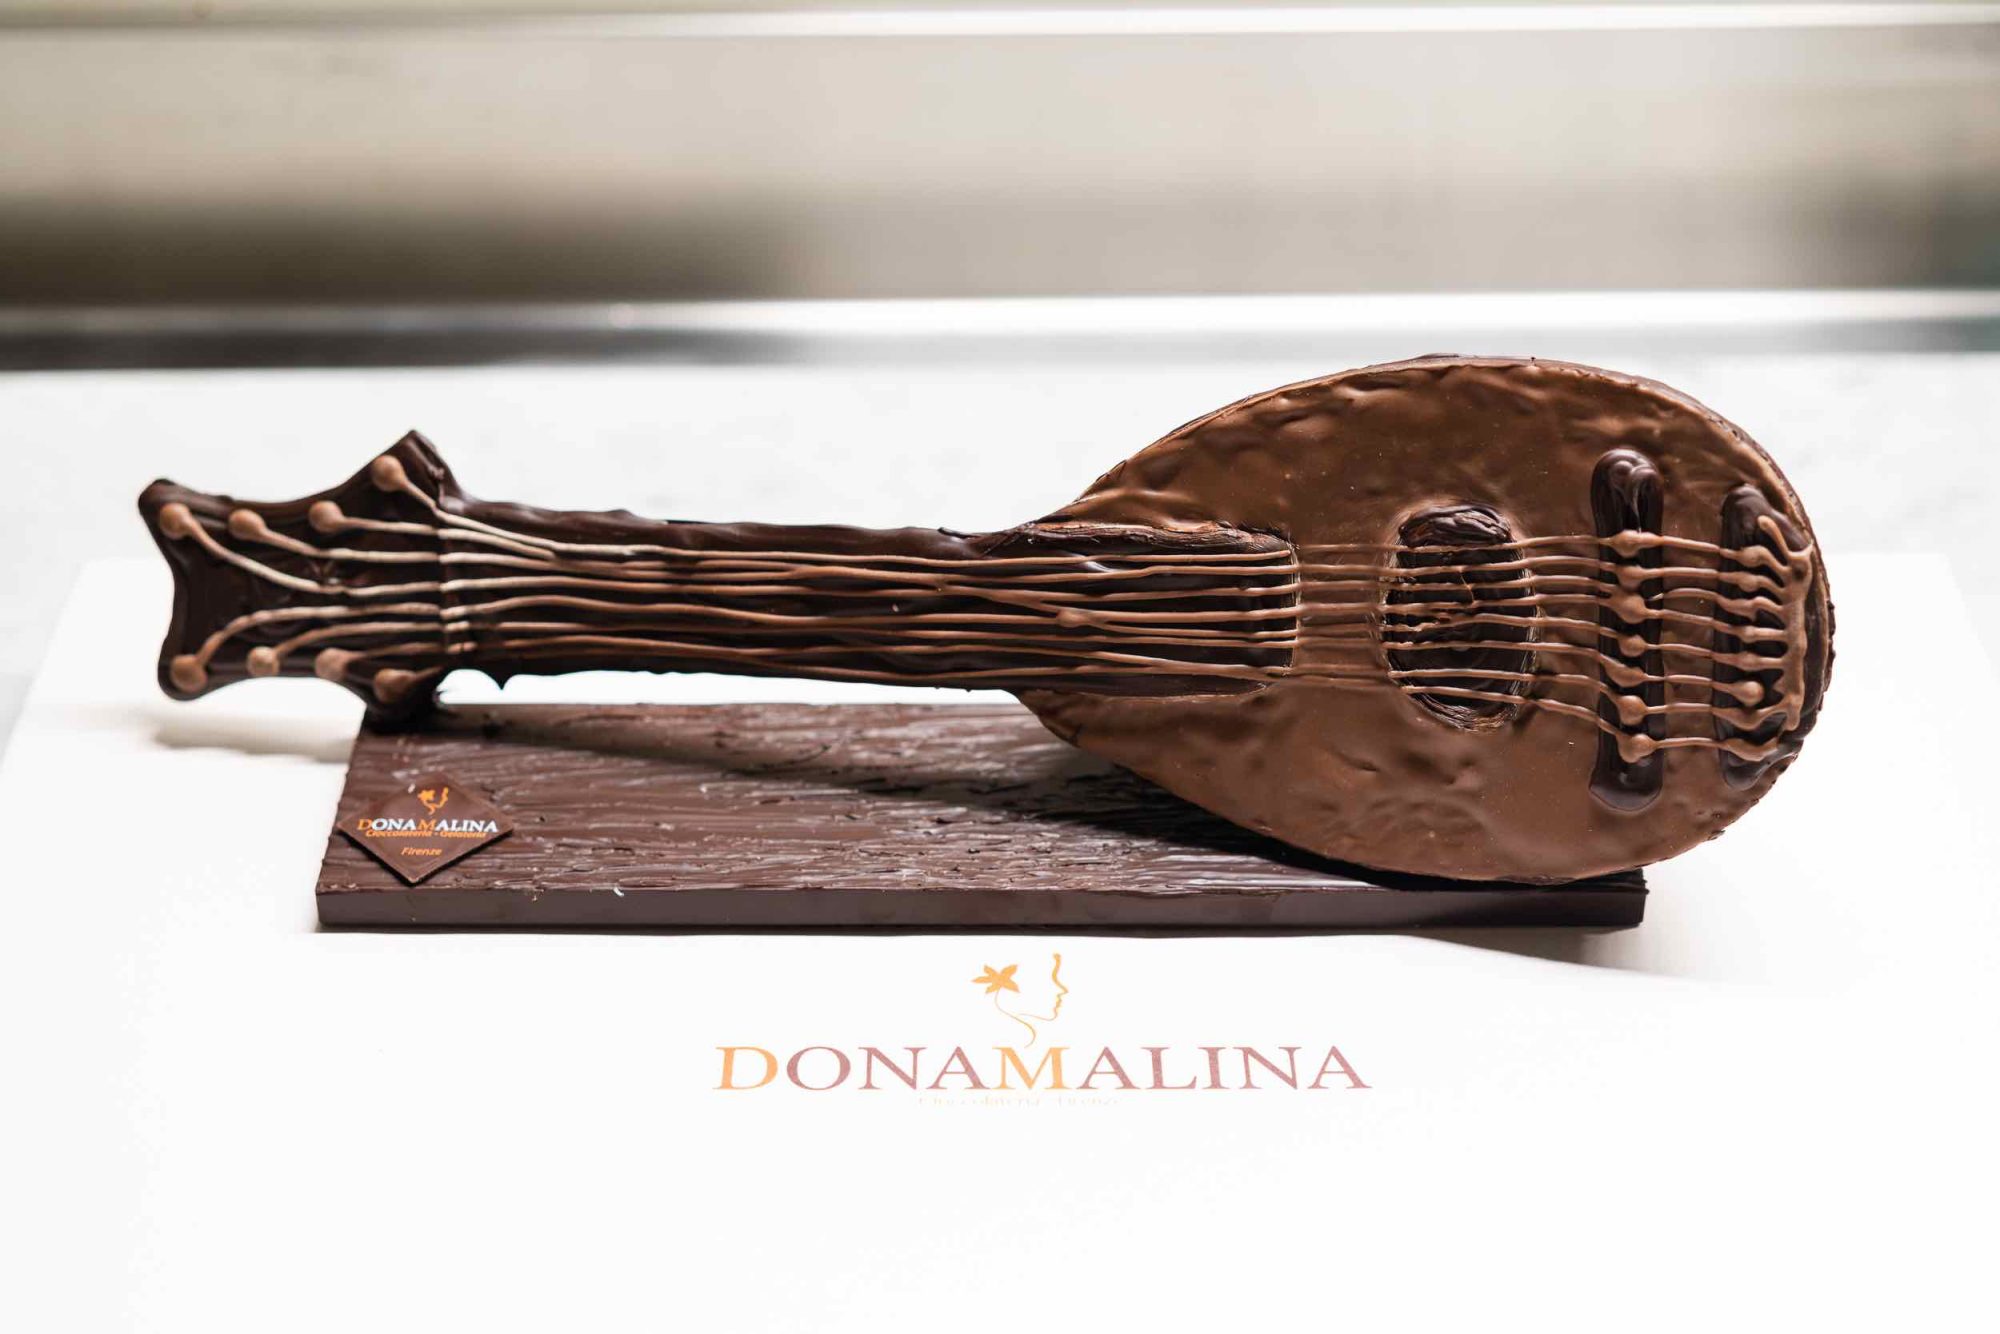 DonaMalina, botteghe di cioccolateria e gelateria a Firenze, produce deliziose creazioni Artigianali per gli tutti gli amanti della dolcezza.